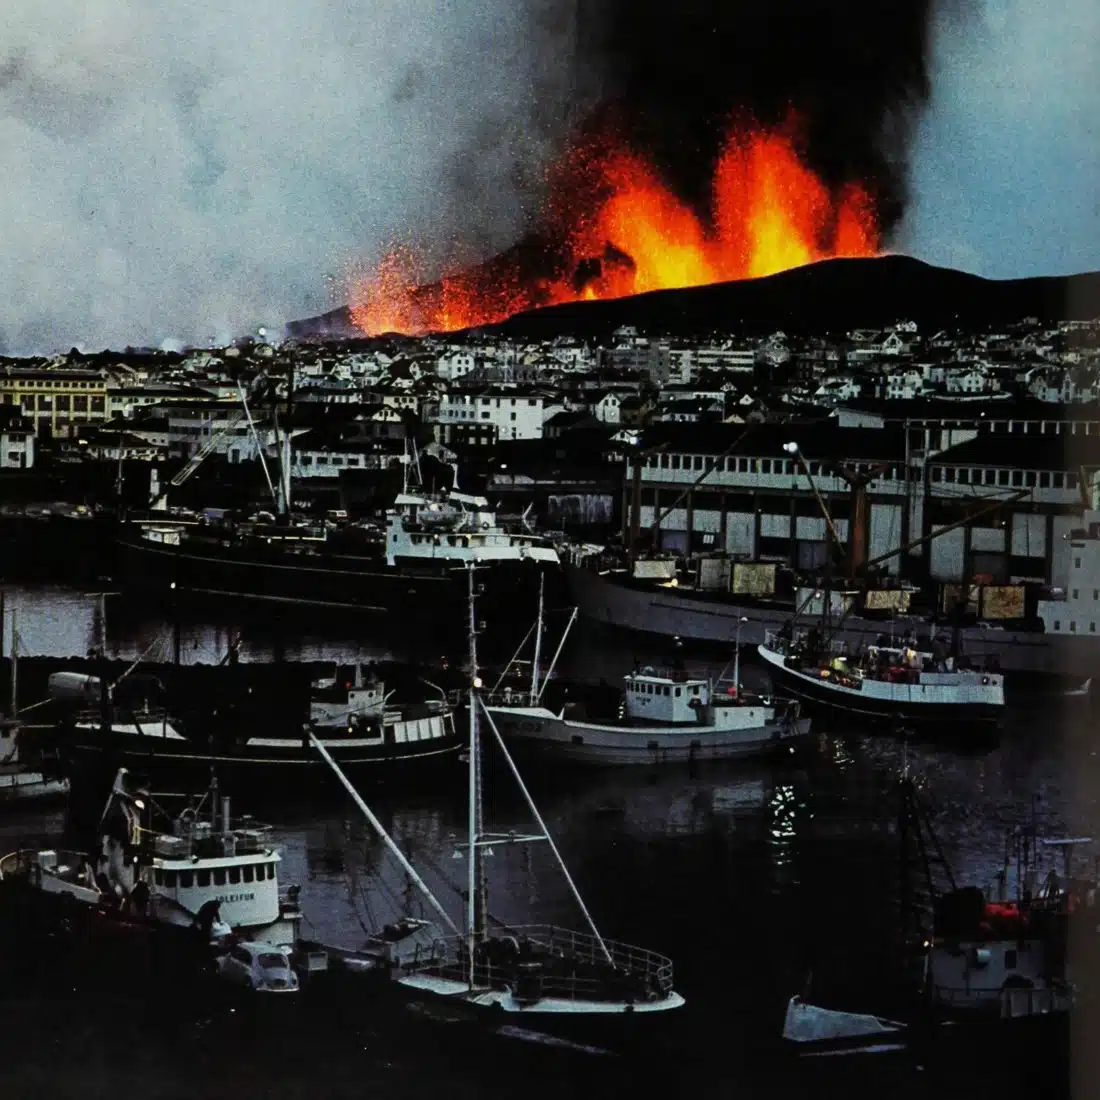 1973 eldfell eruption